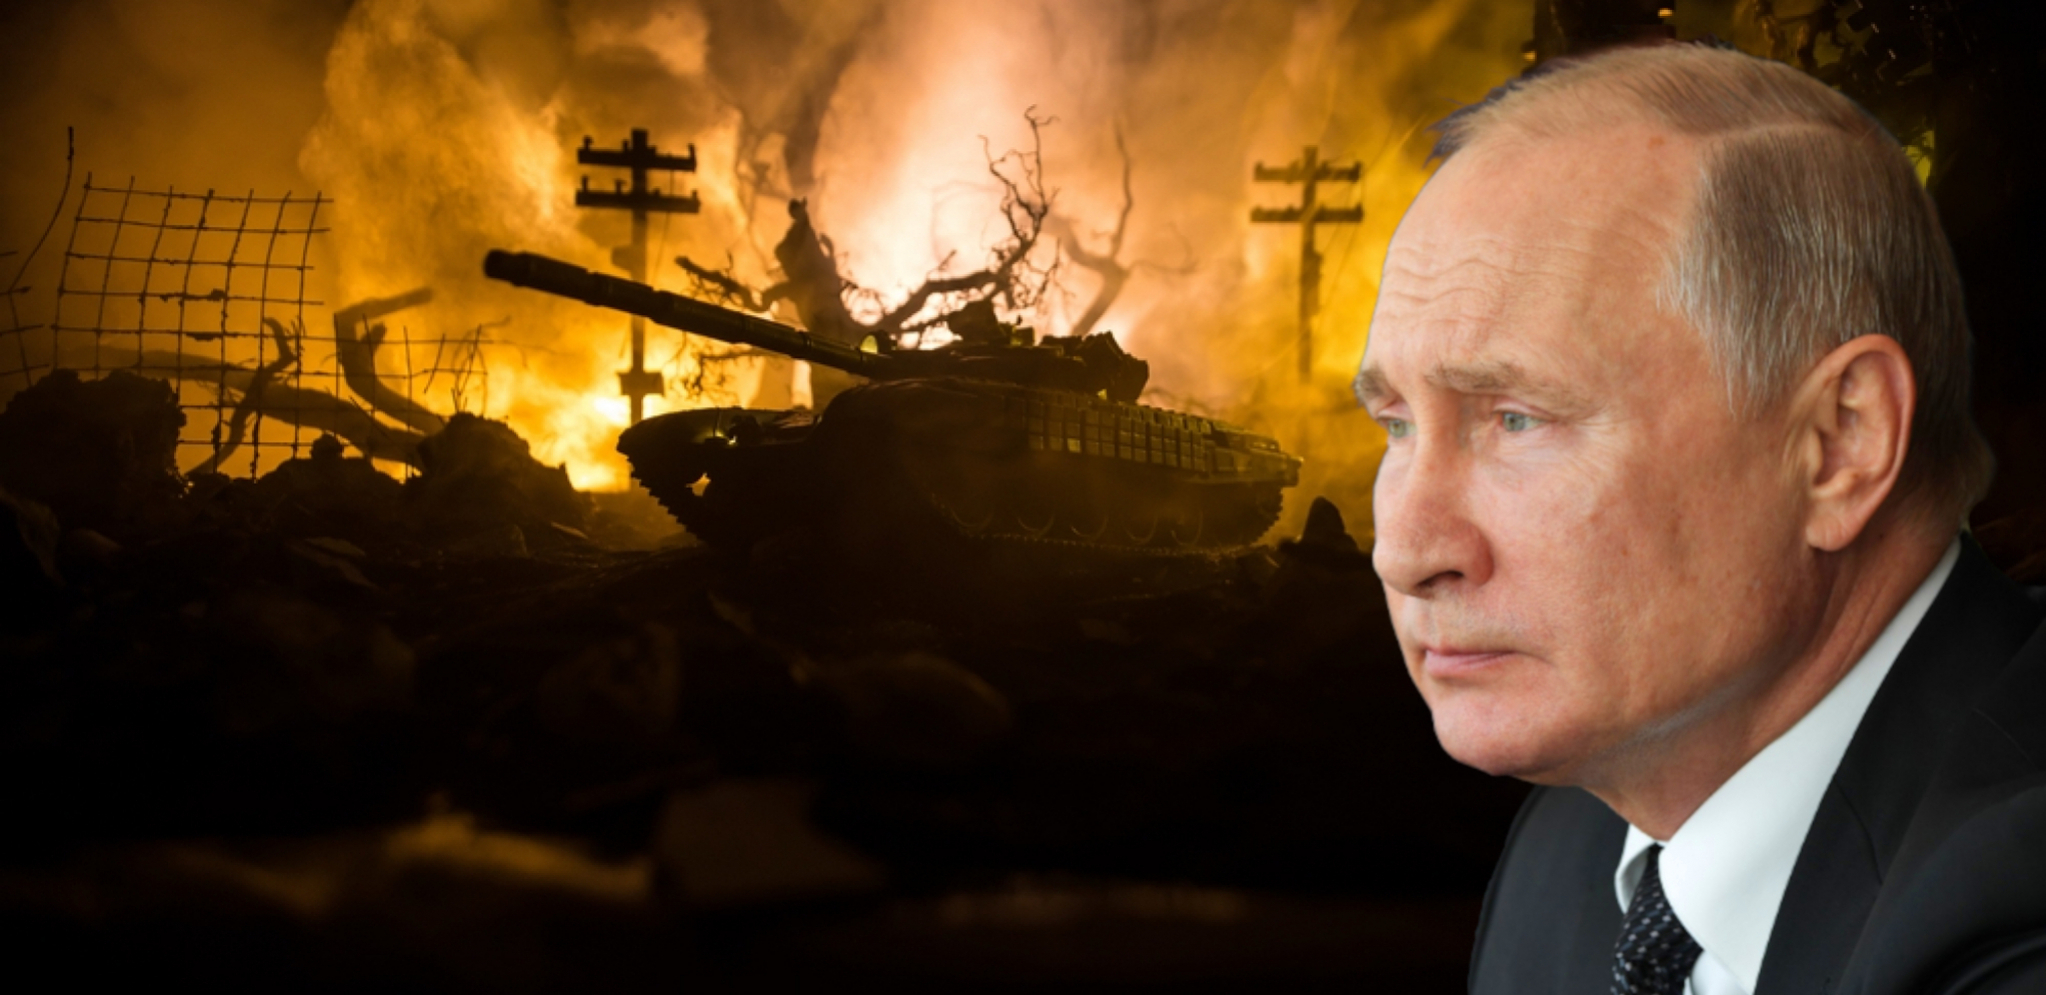 BRZO REŠENJE Kako Putin može da završi ukrajinski problem?